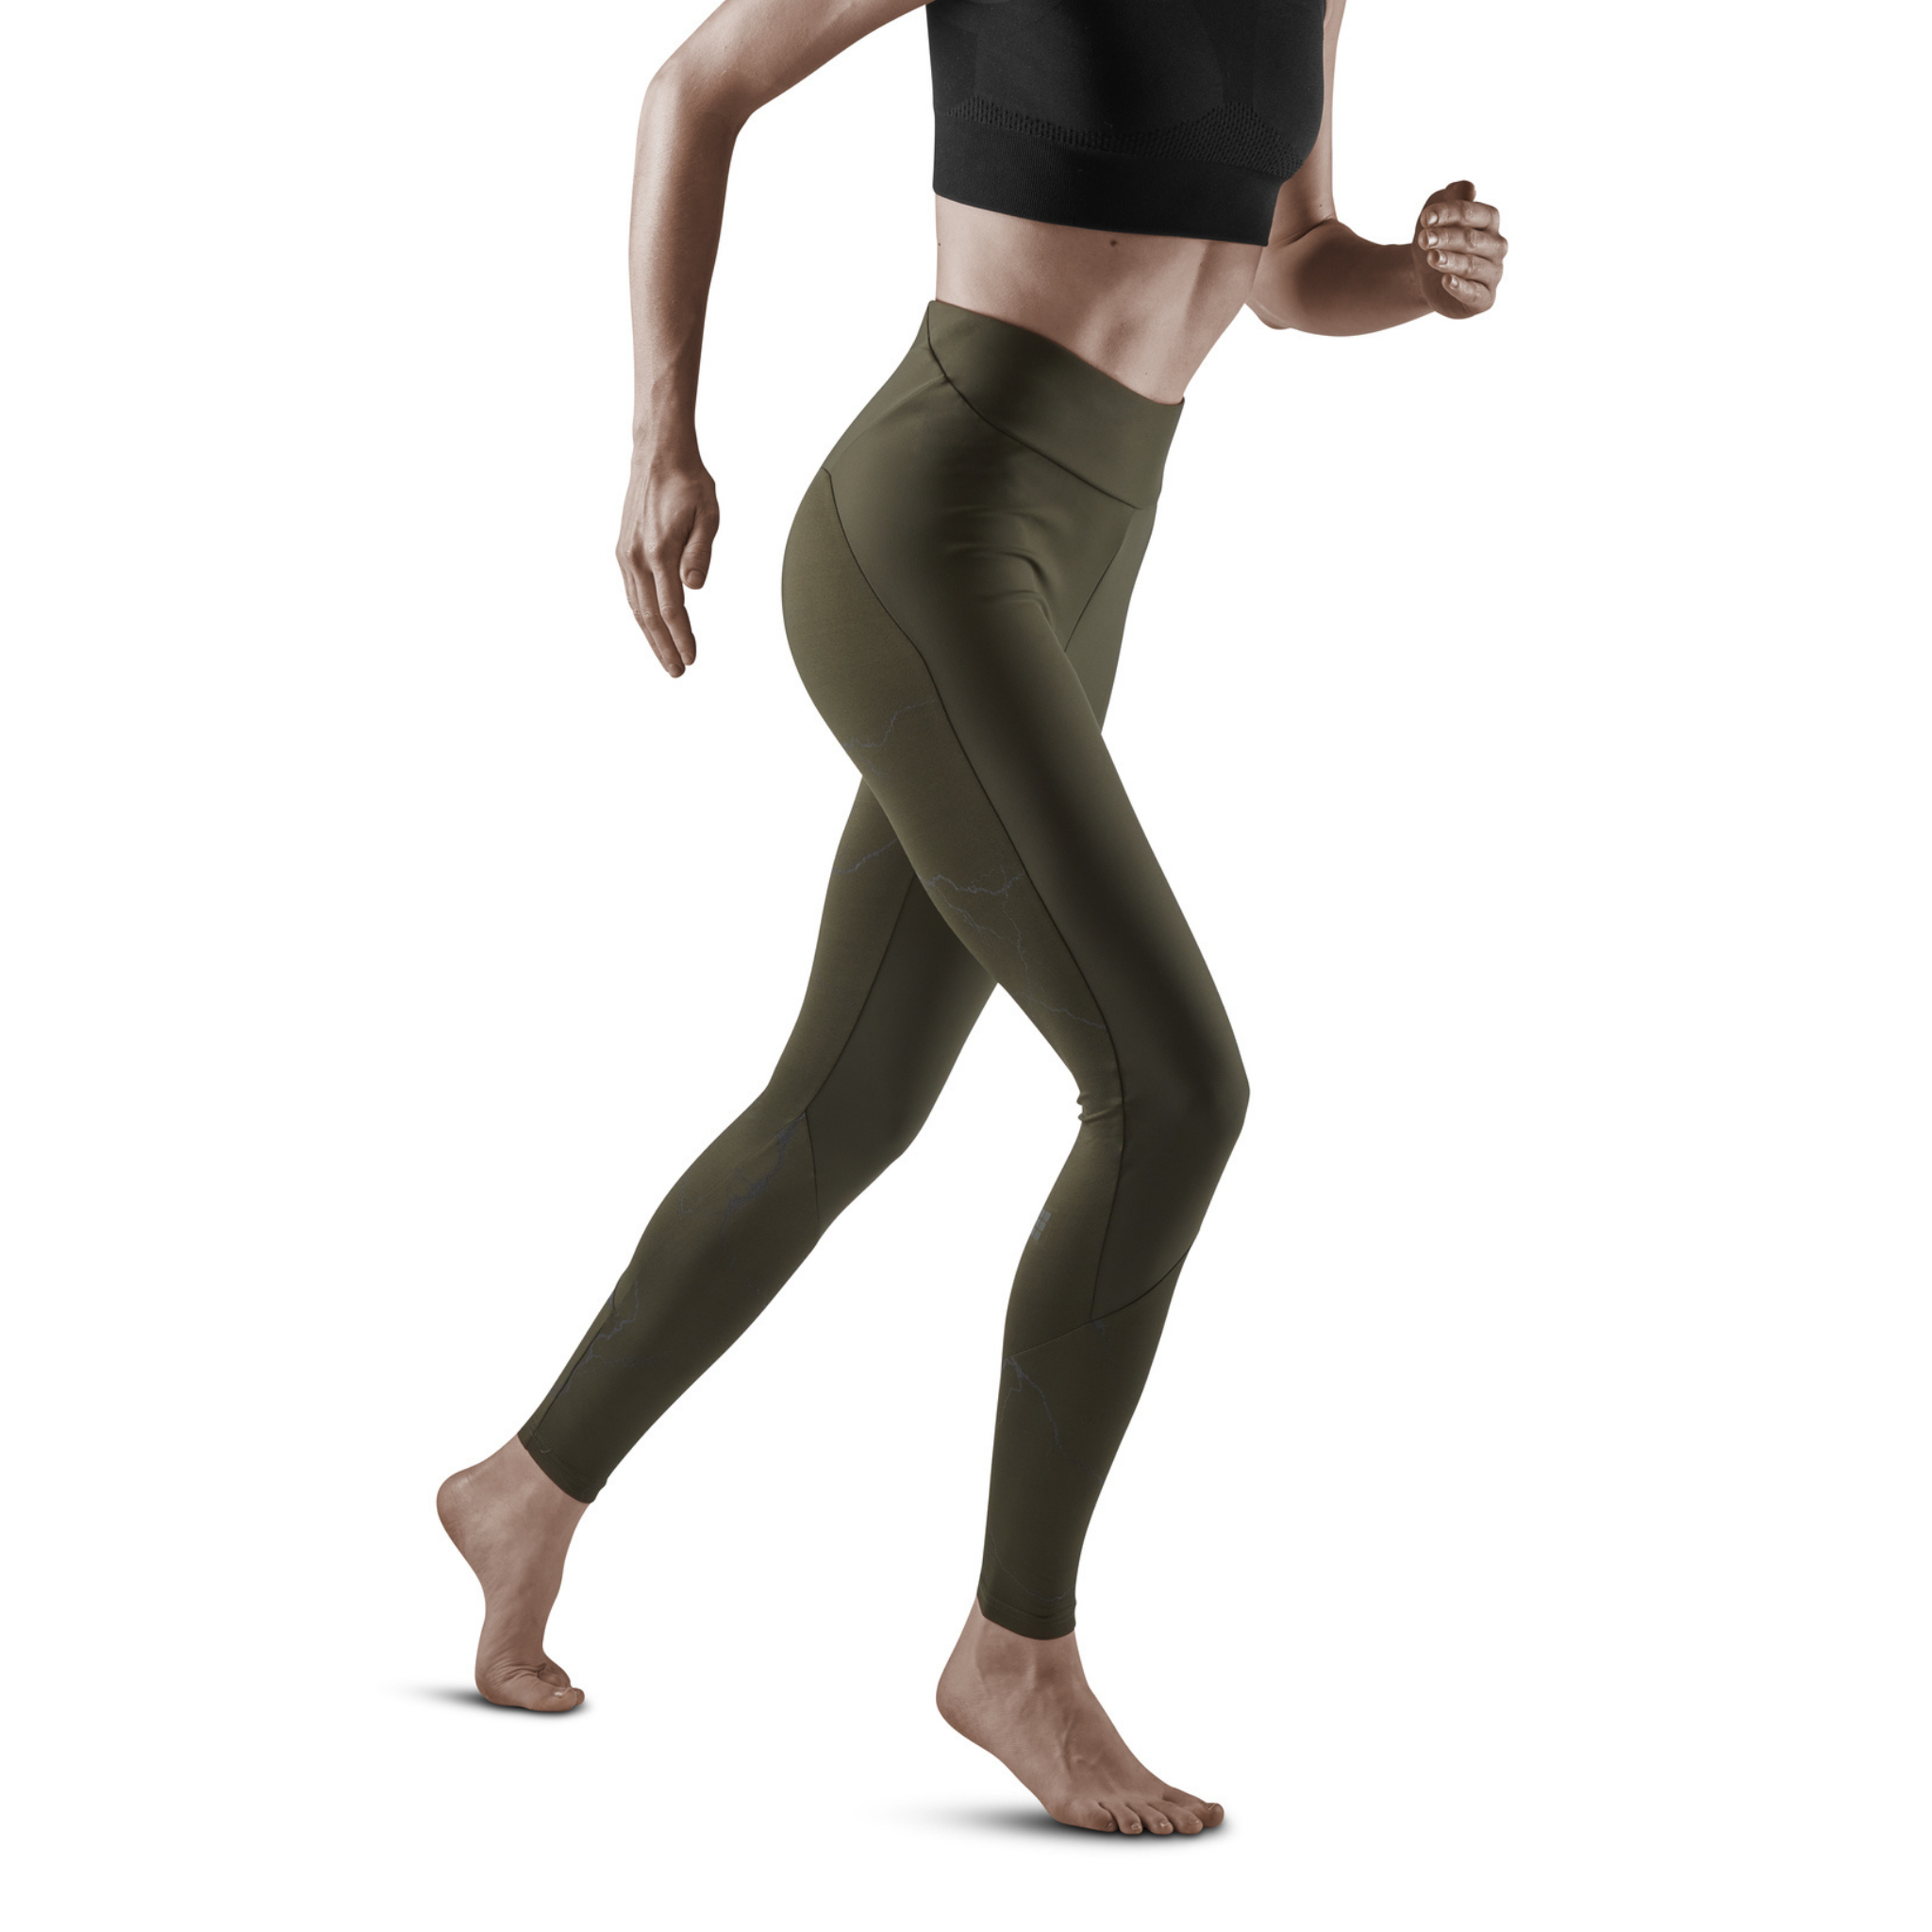 Tiktok Leggings for Women (Dark Green), Butt Lifting High Waist Yoga Pants,  Tummy Control Scrunch Workout Running Booty Tights, XL Size - Walmart.com